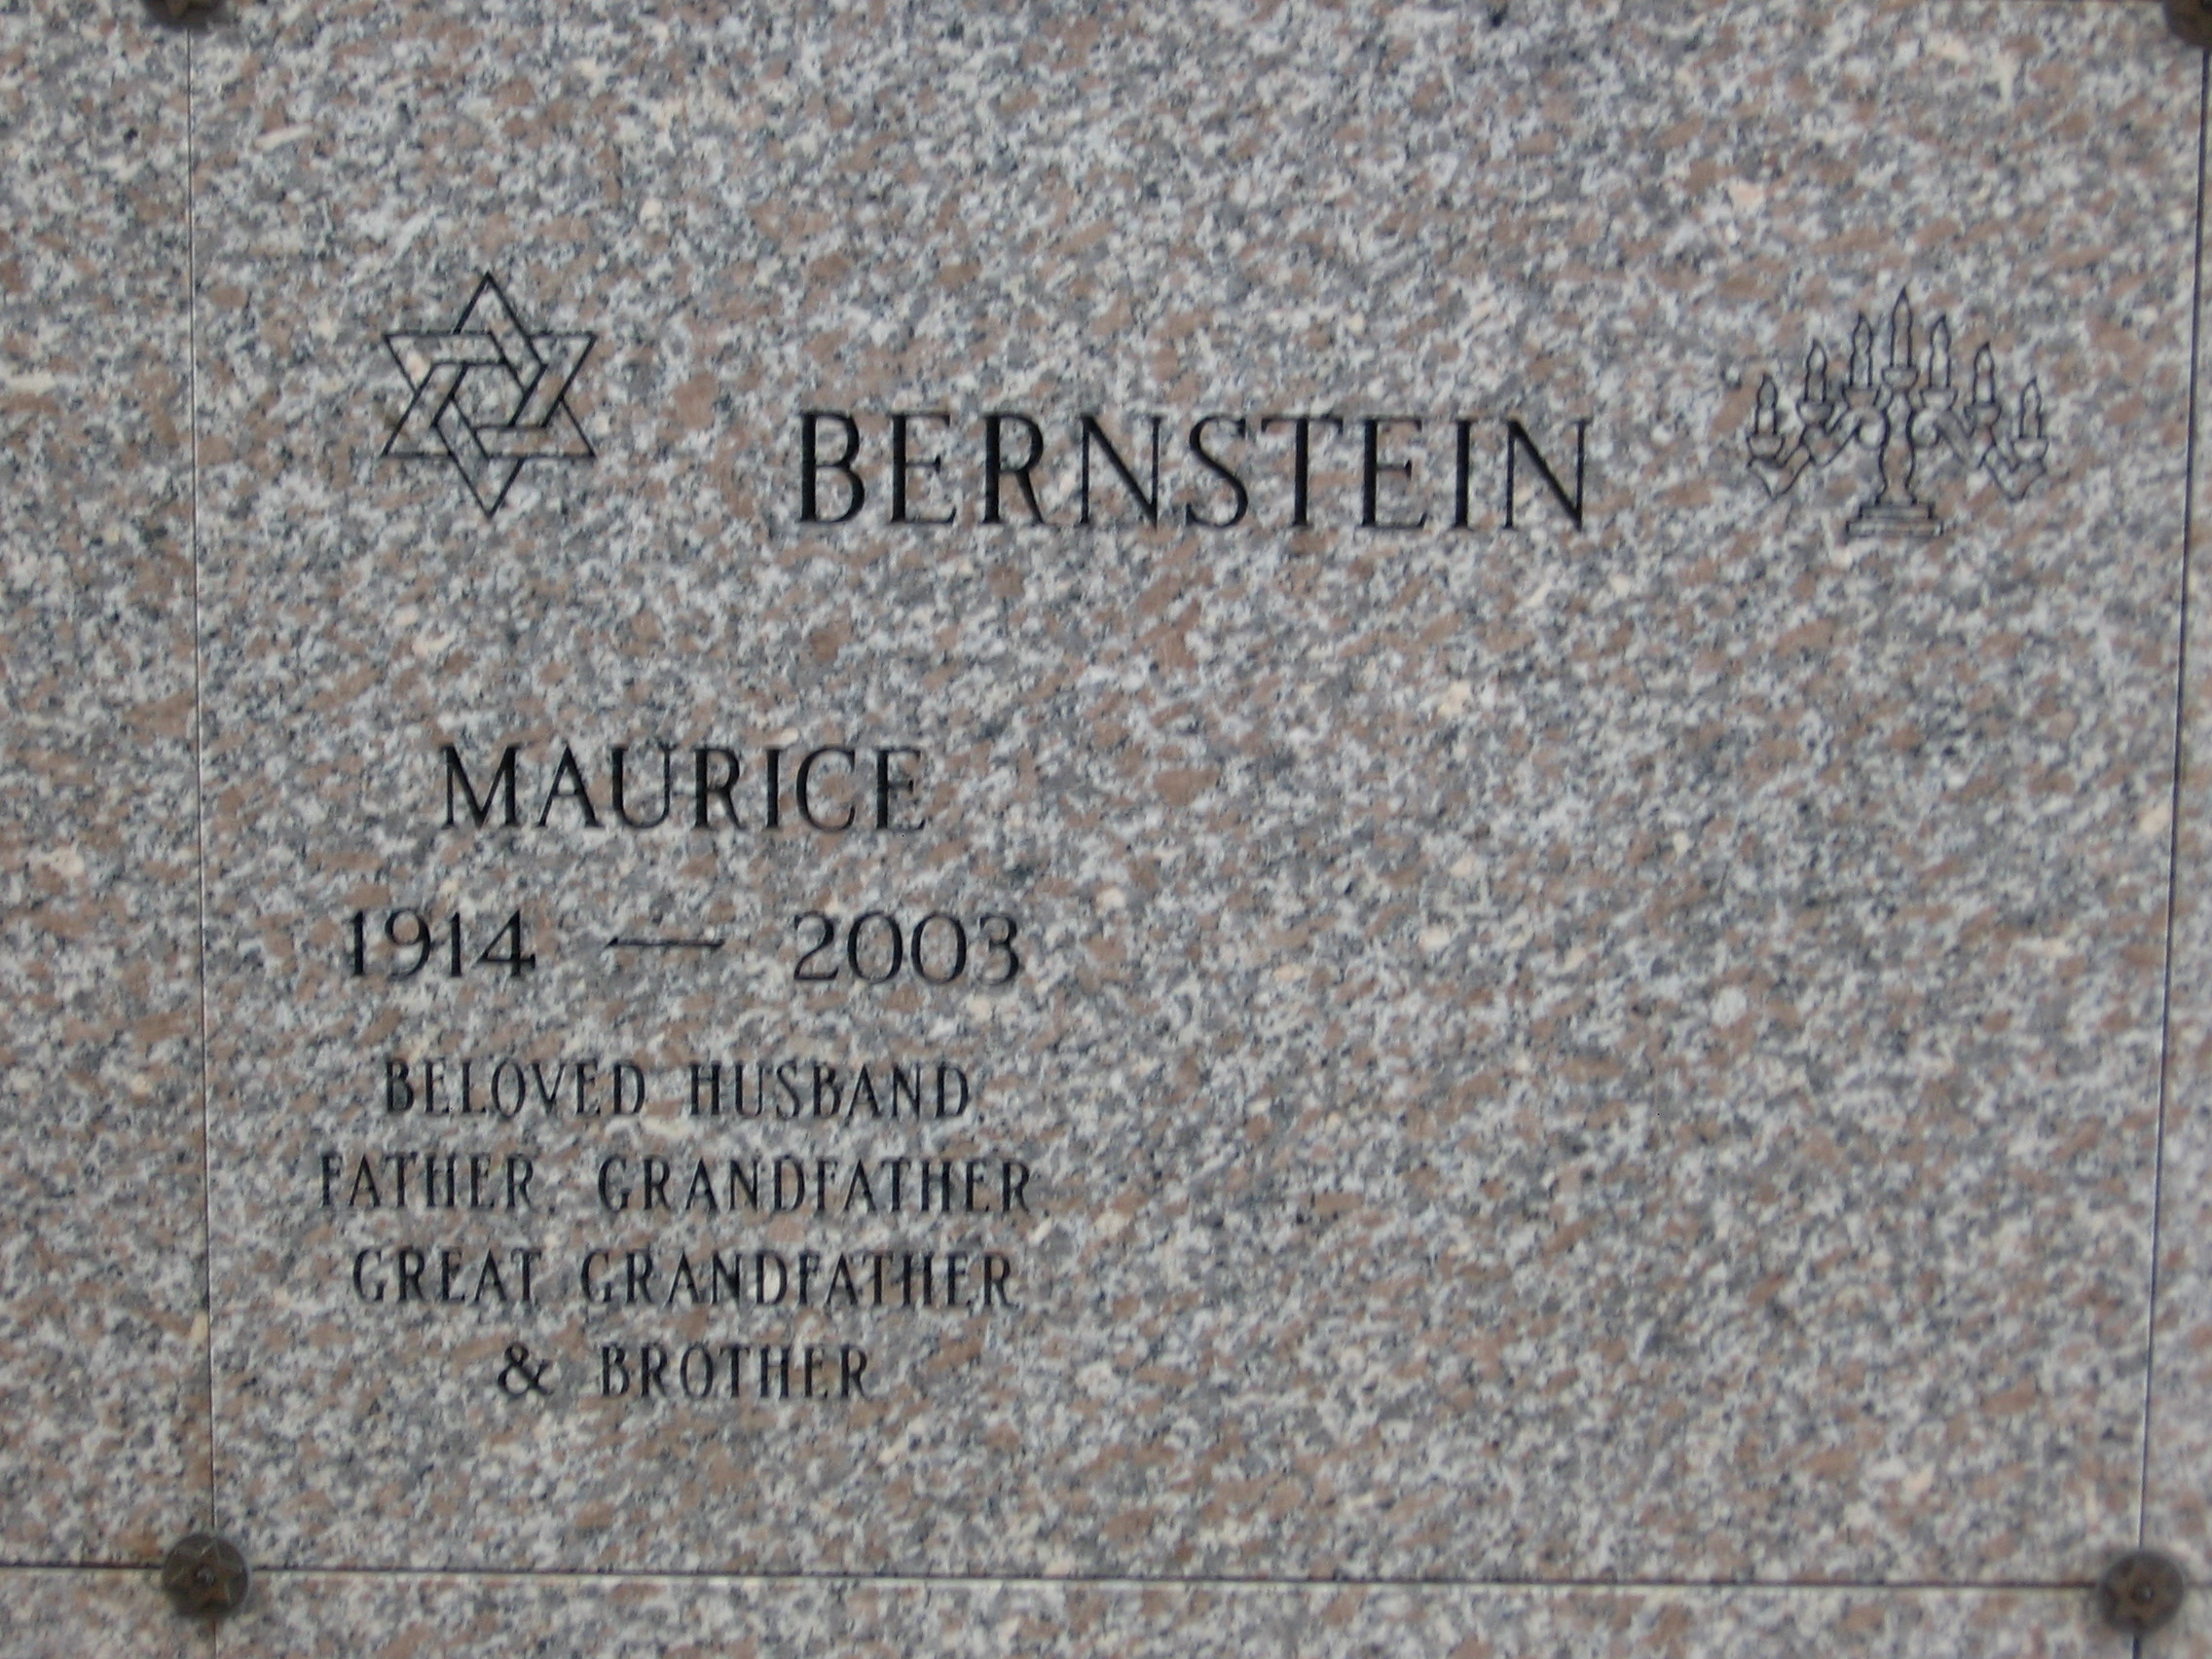 Maurice Bernstein